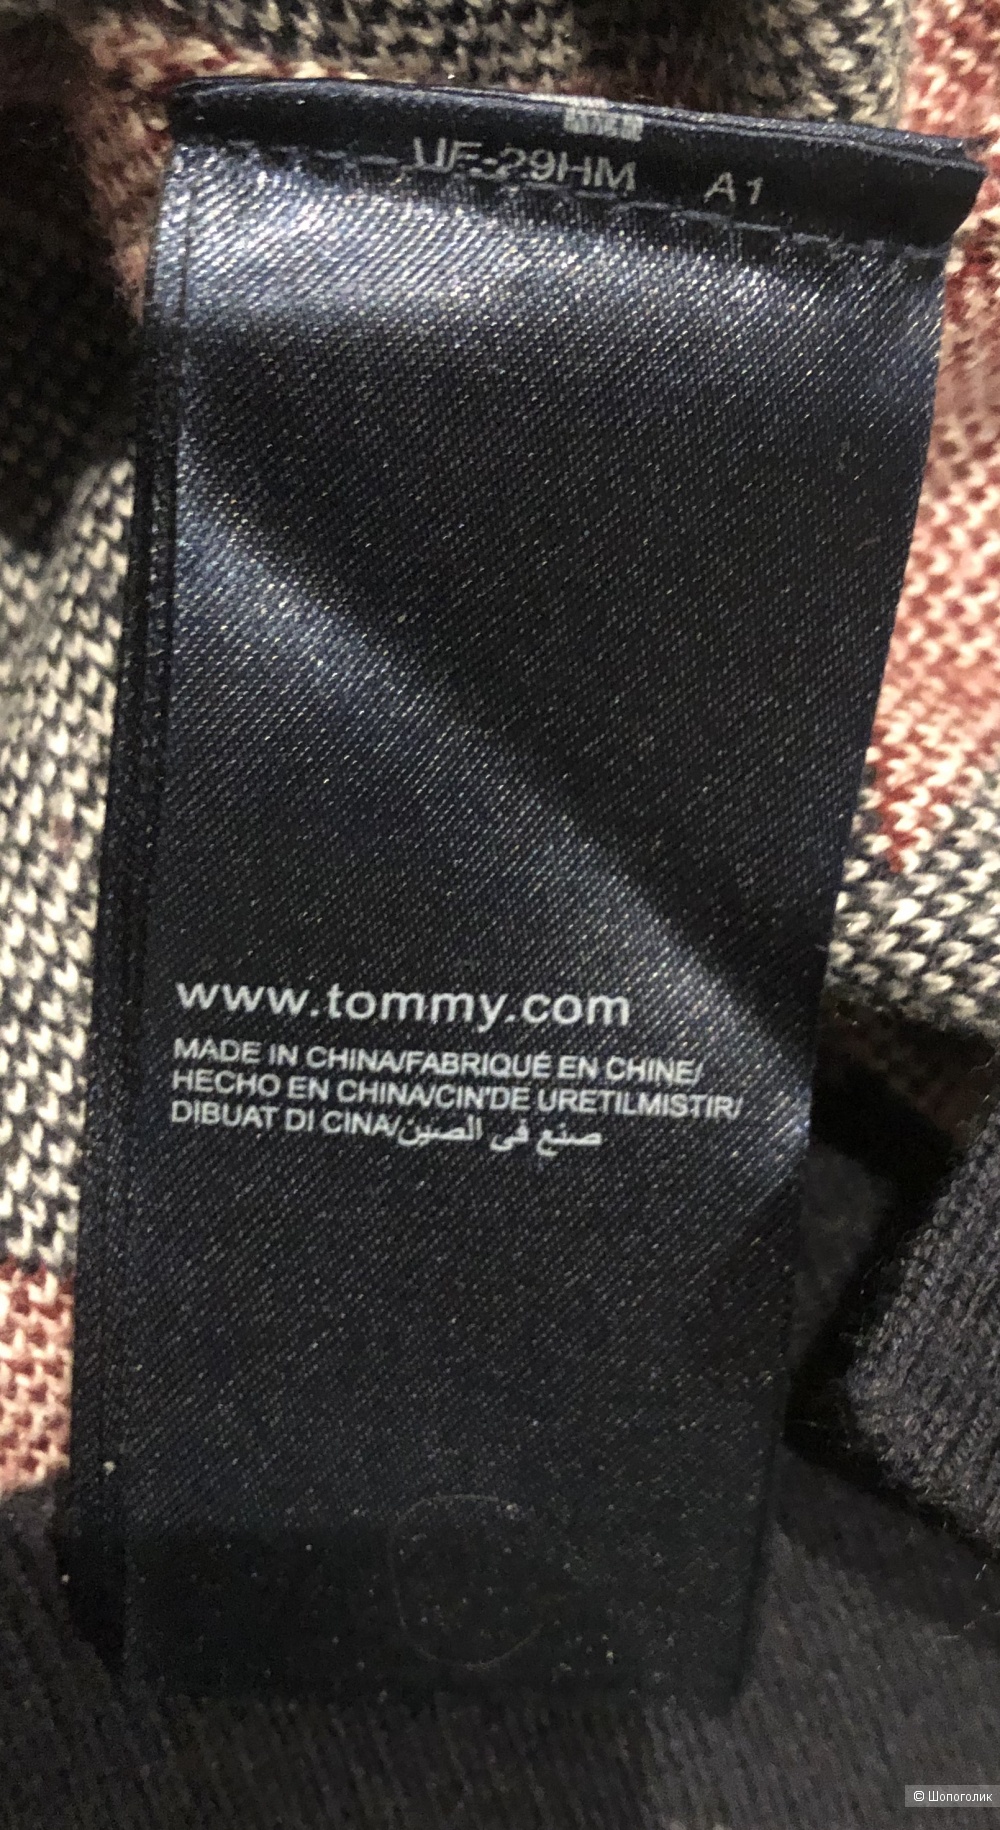 Джемпер Tommy Hilfiger  с кашемиром размер XS ( на 42-44 российский)